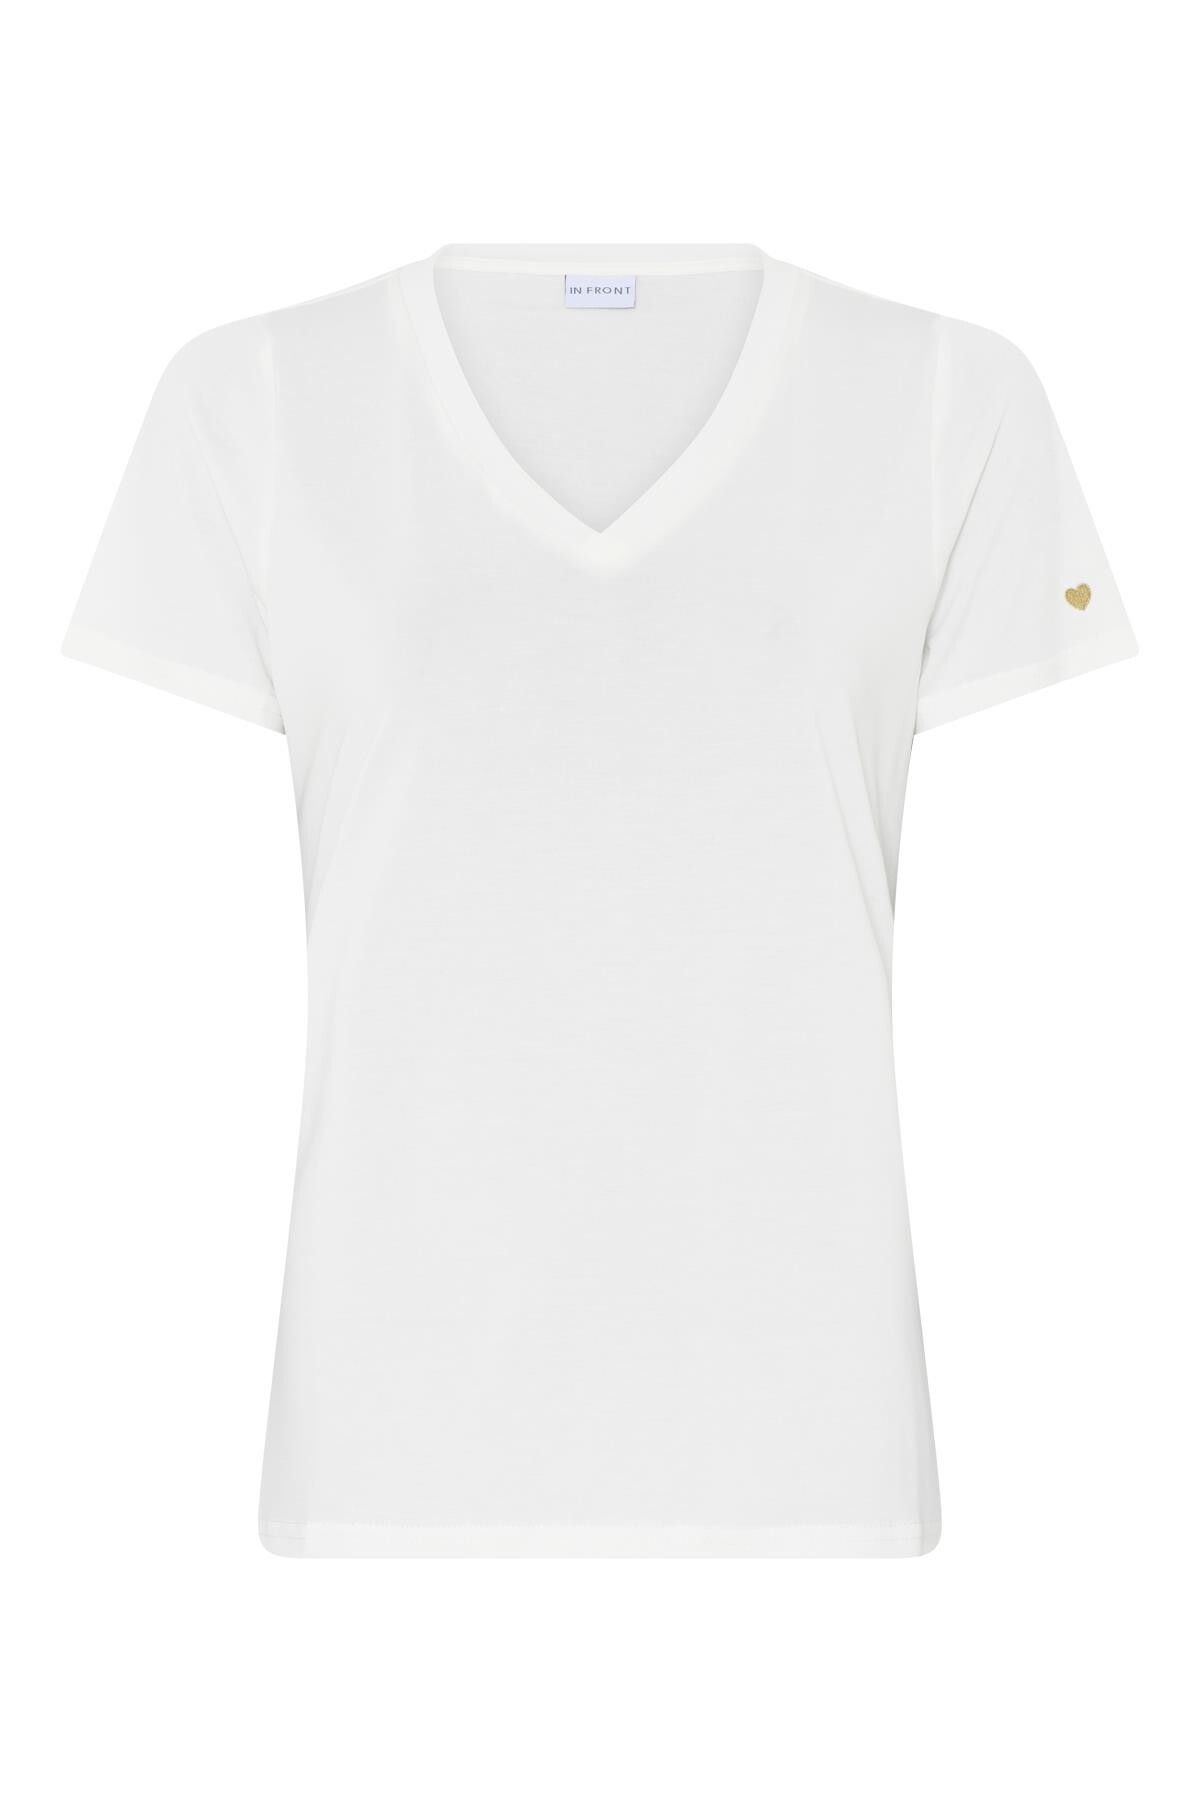 IN FRONT Nina T-shirt, Farve: White, Størrelse: S, Dame